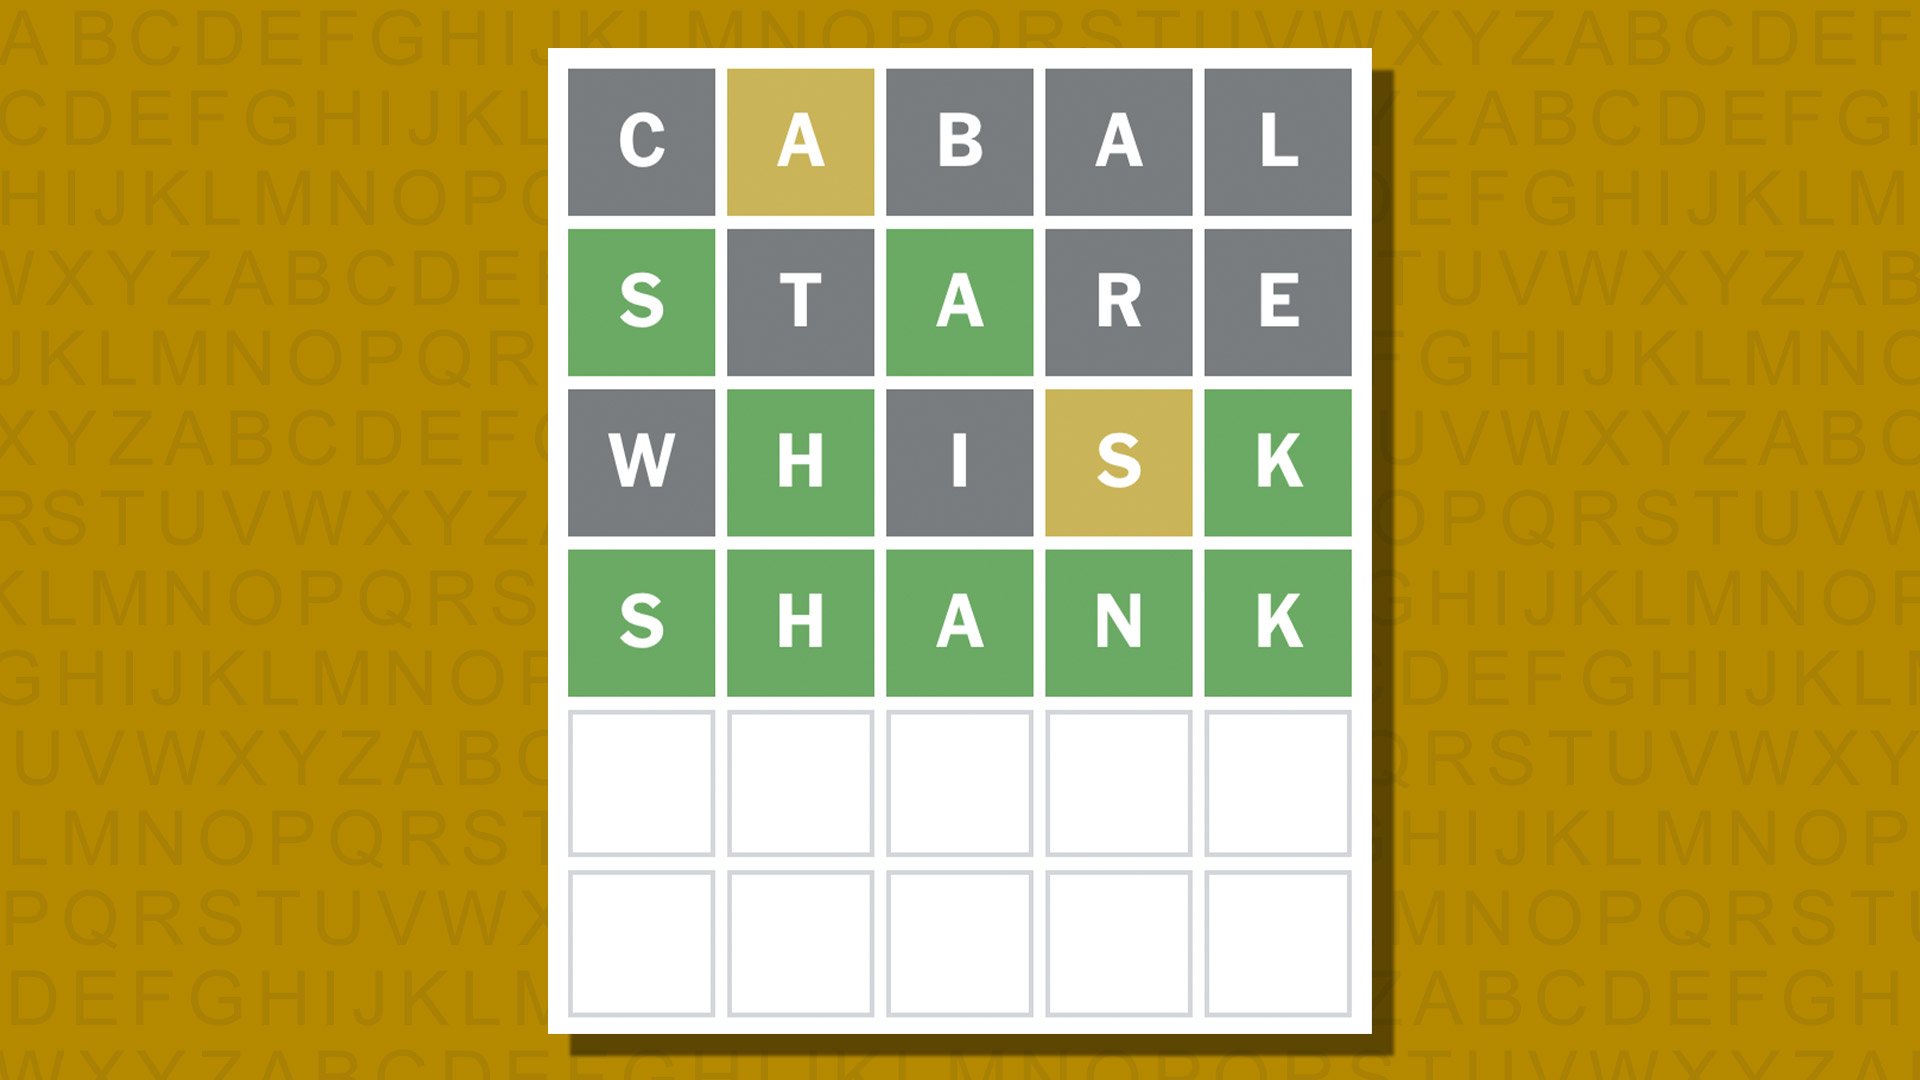 Ответ в формате Word для игры 1032 на желтом фоне